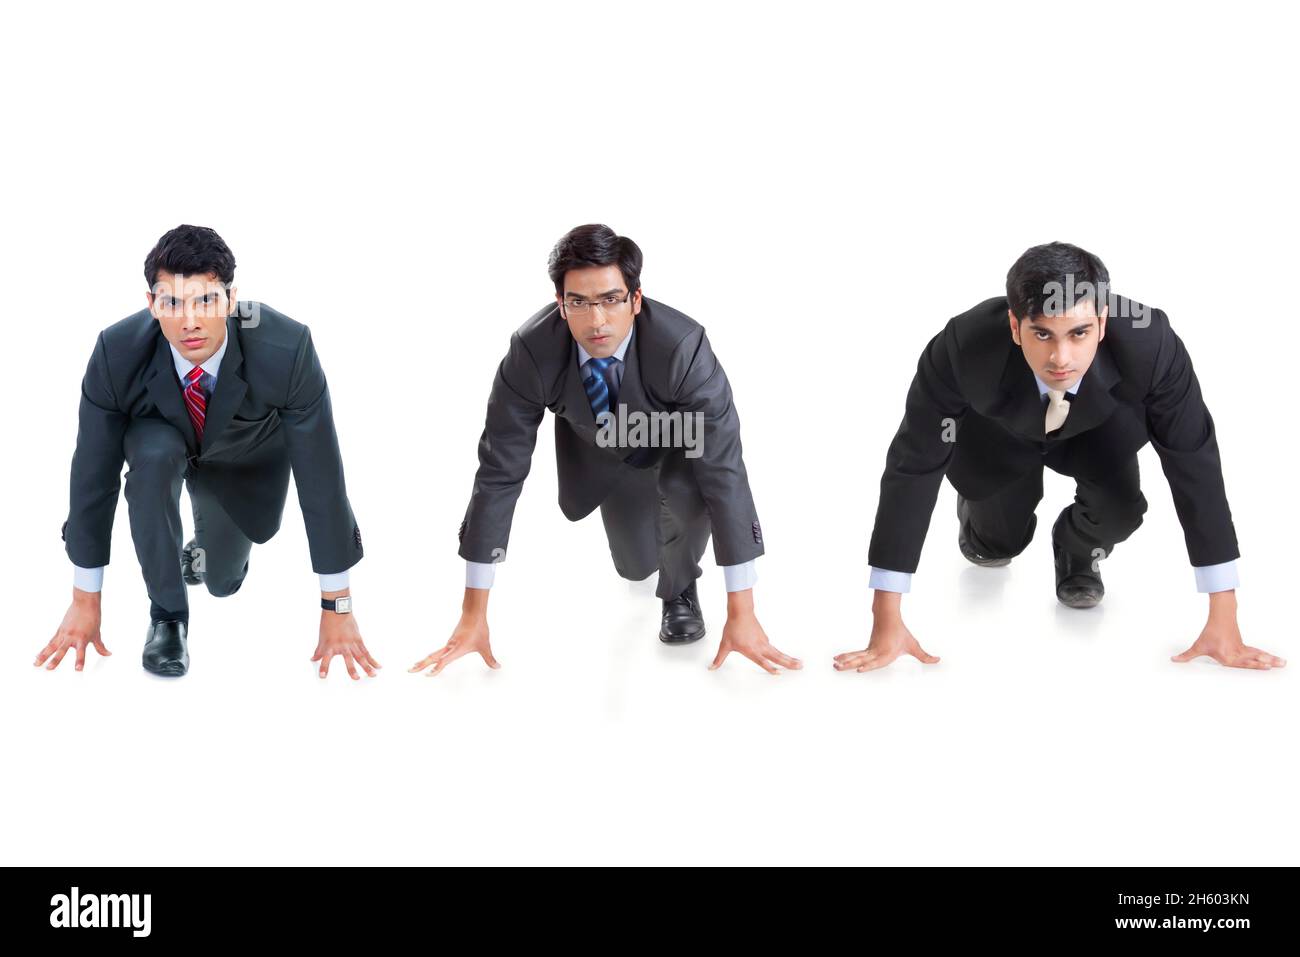 Eine Gruppe männlicher Unternehmensmitarbeiter in formellen Geschäftsbereichen ist im Begriff, ein Rennen zu führen. Stockfoto